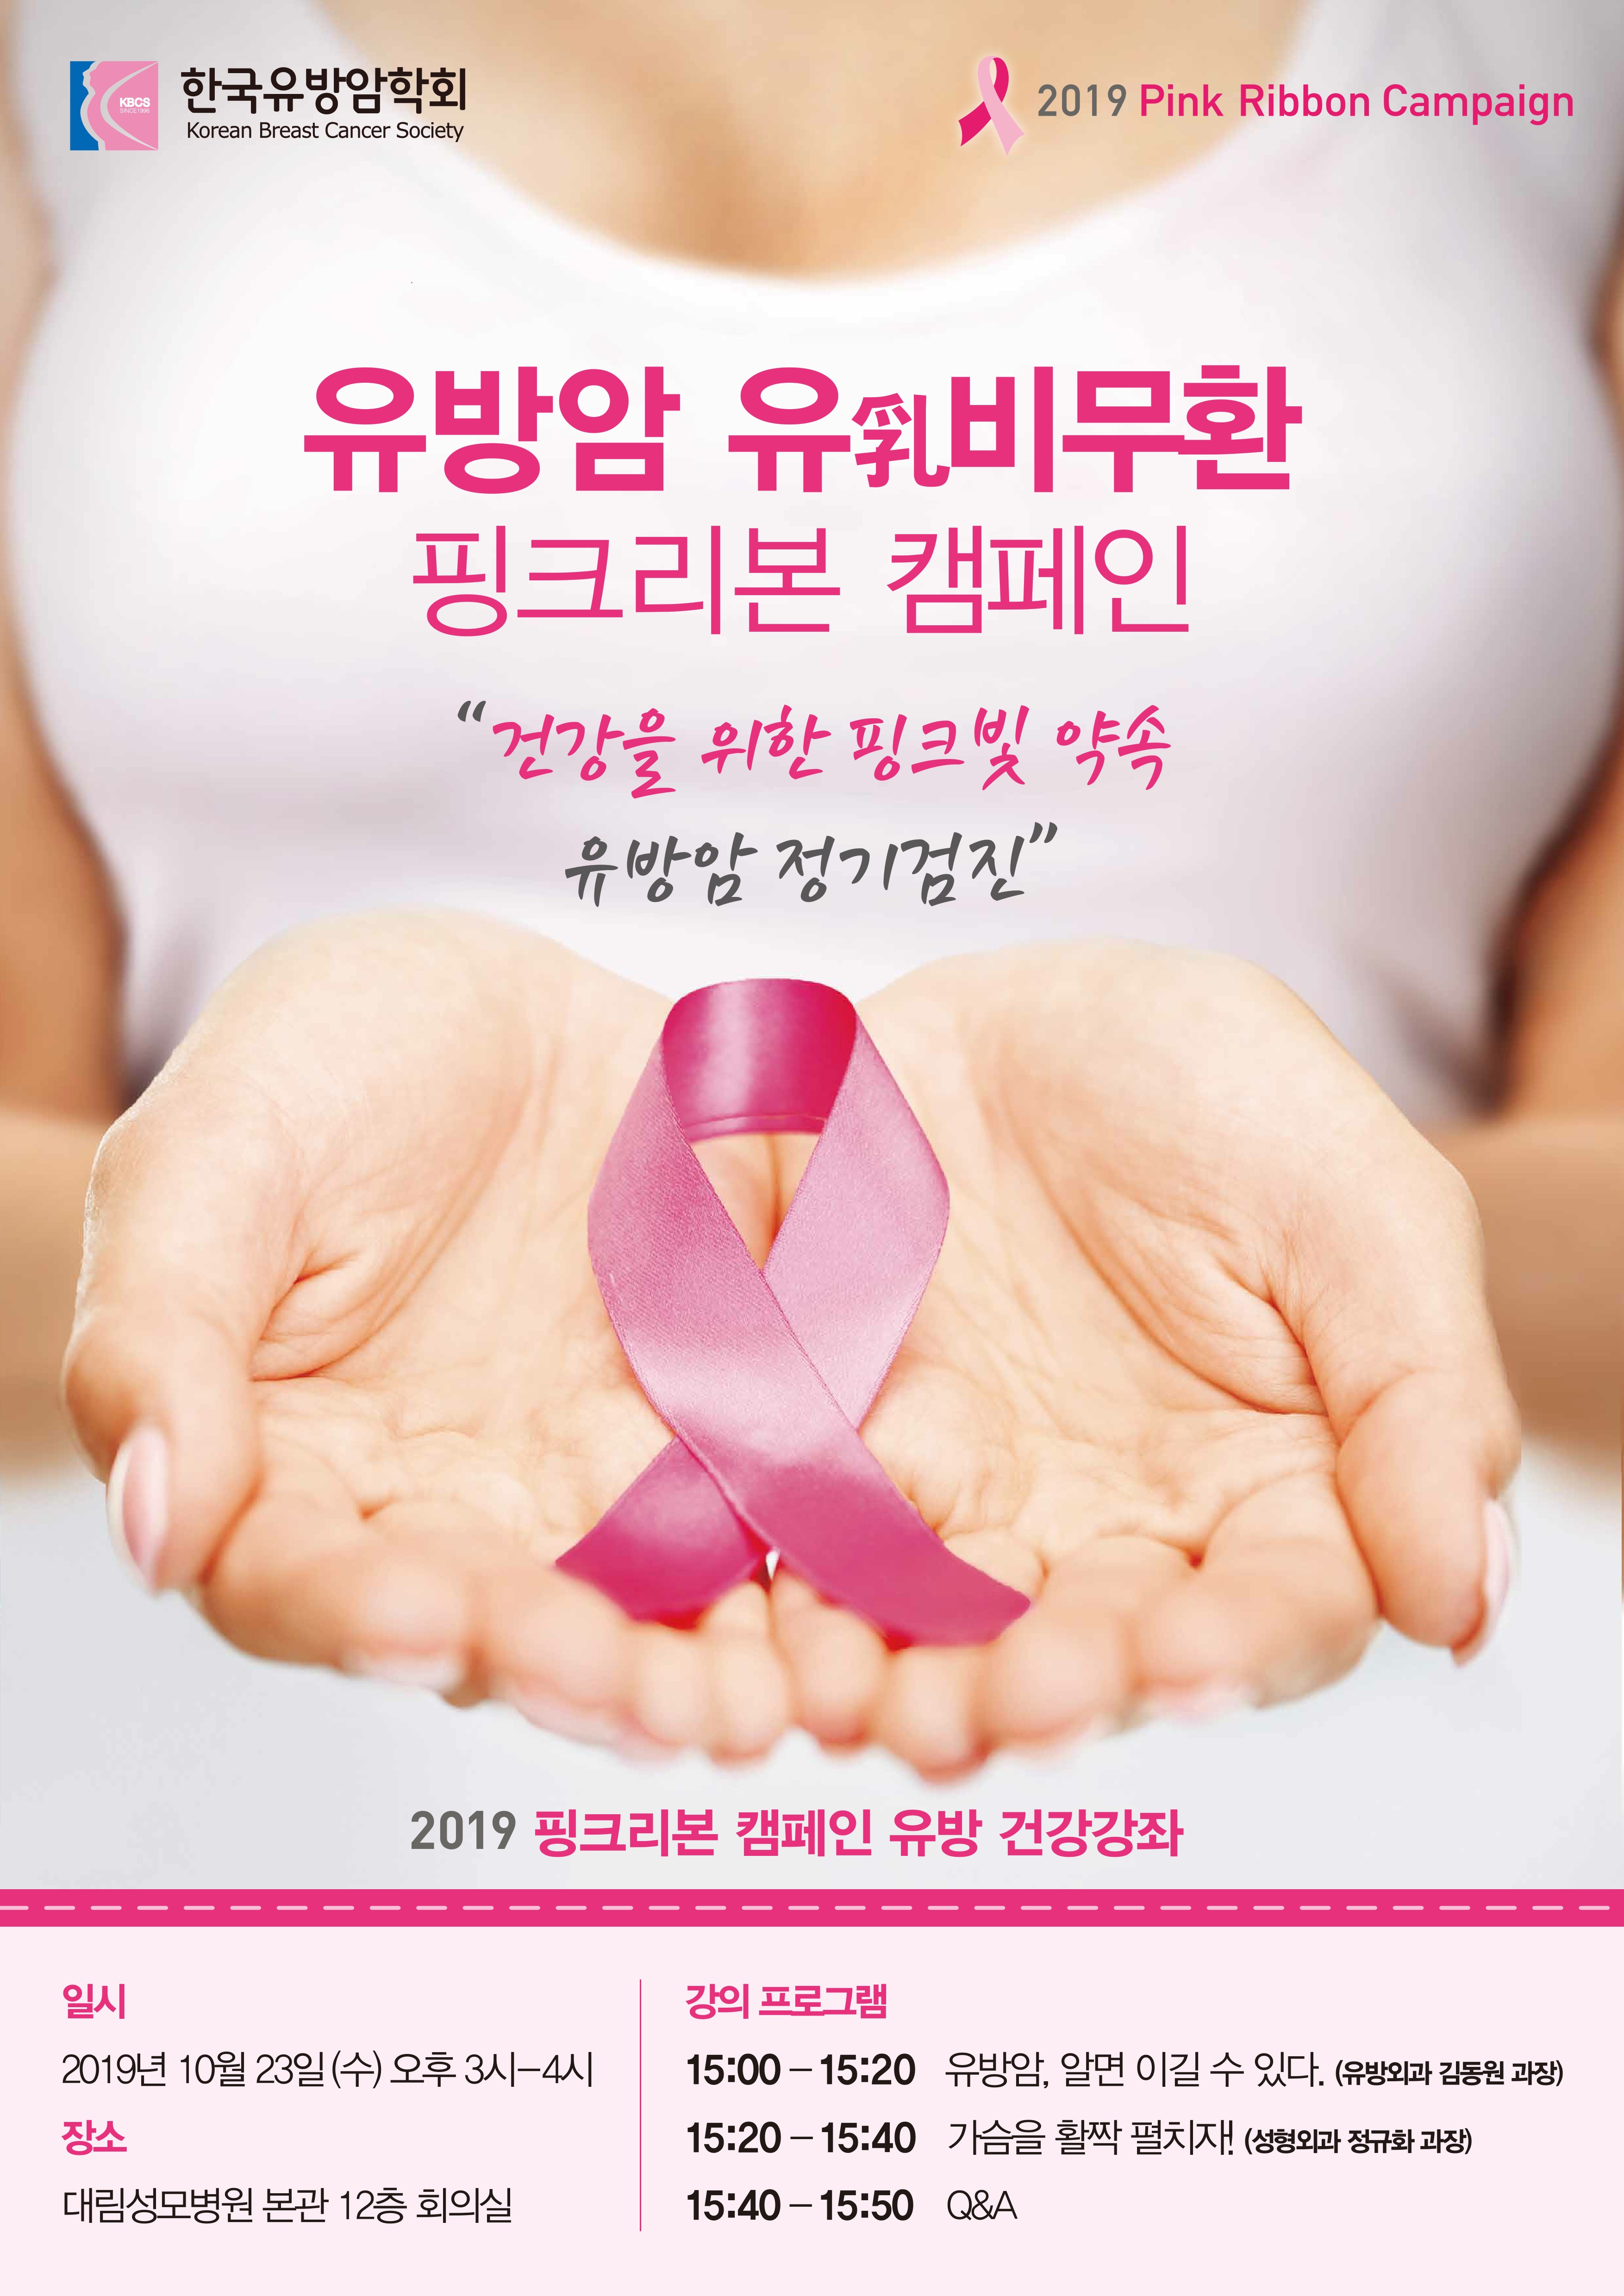 10월 건강강좌 "2019 핑크리본 캠페인 유방 건강강좌"